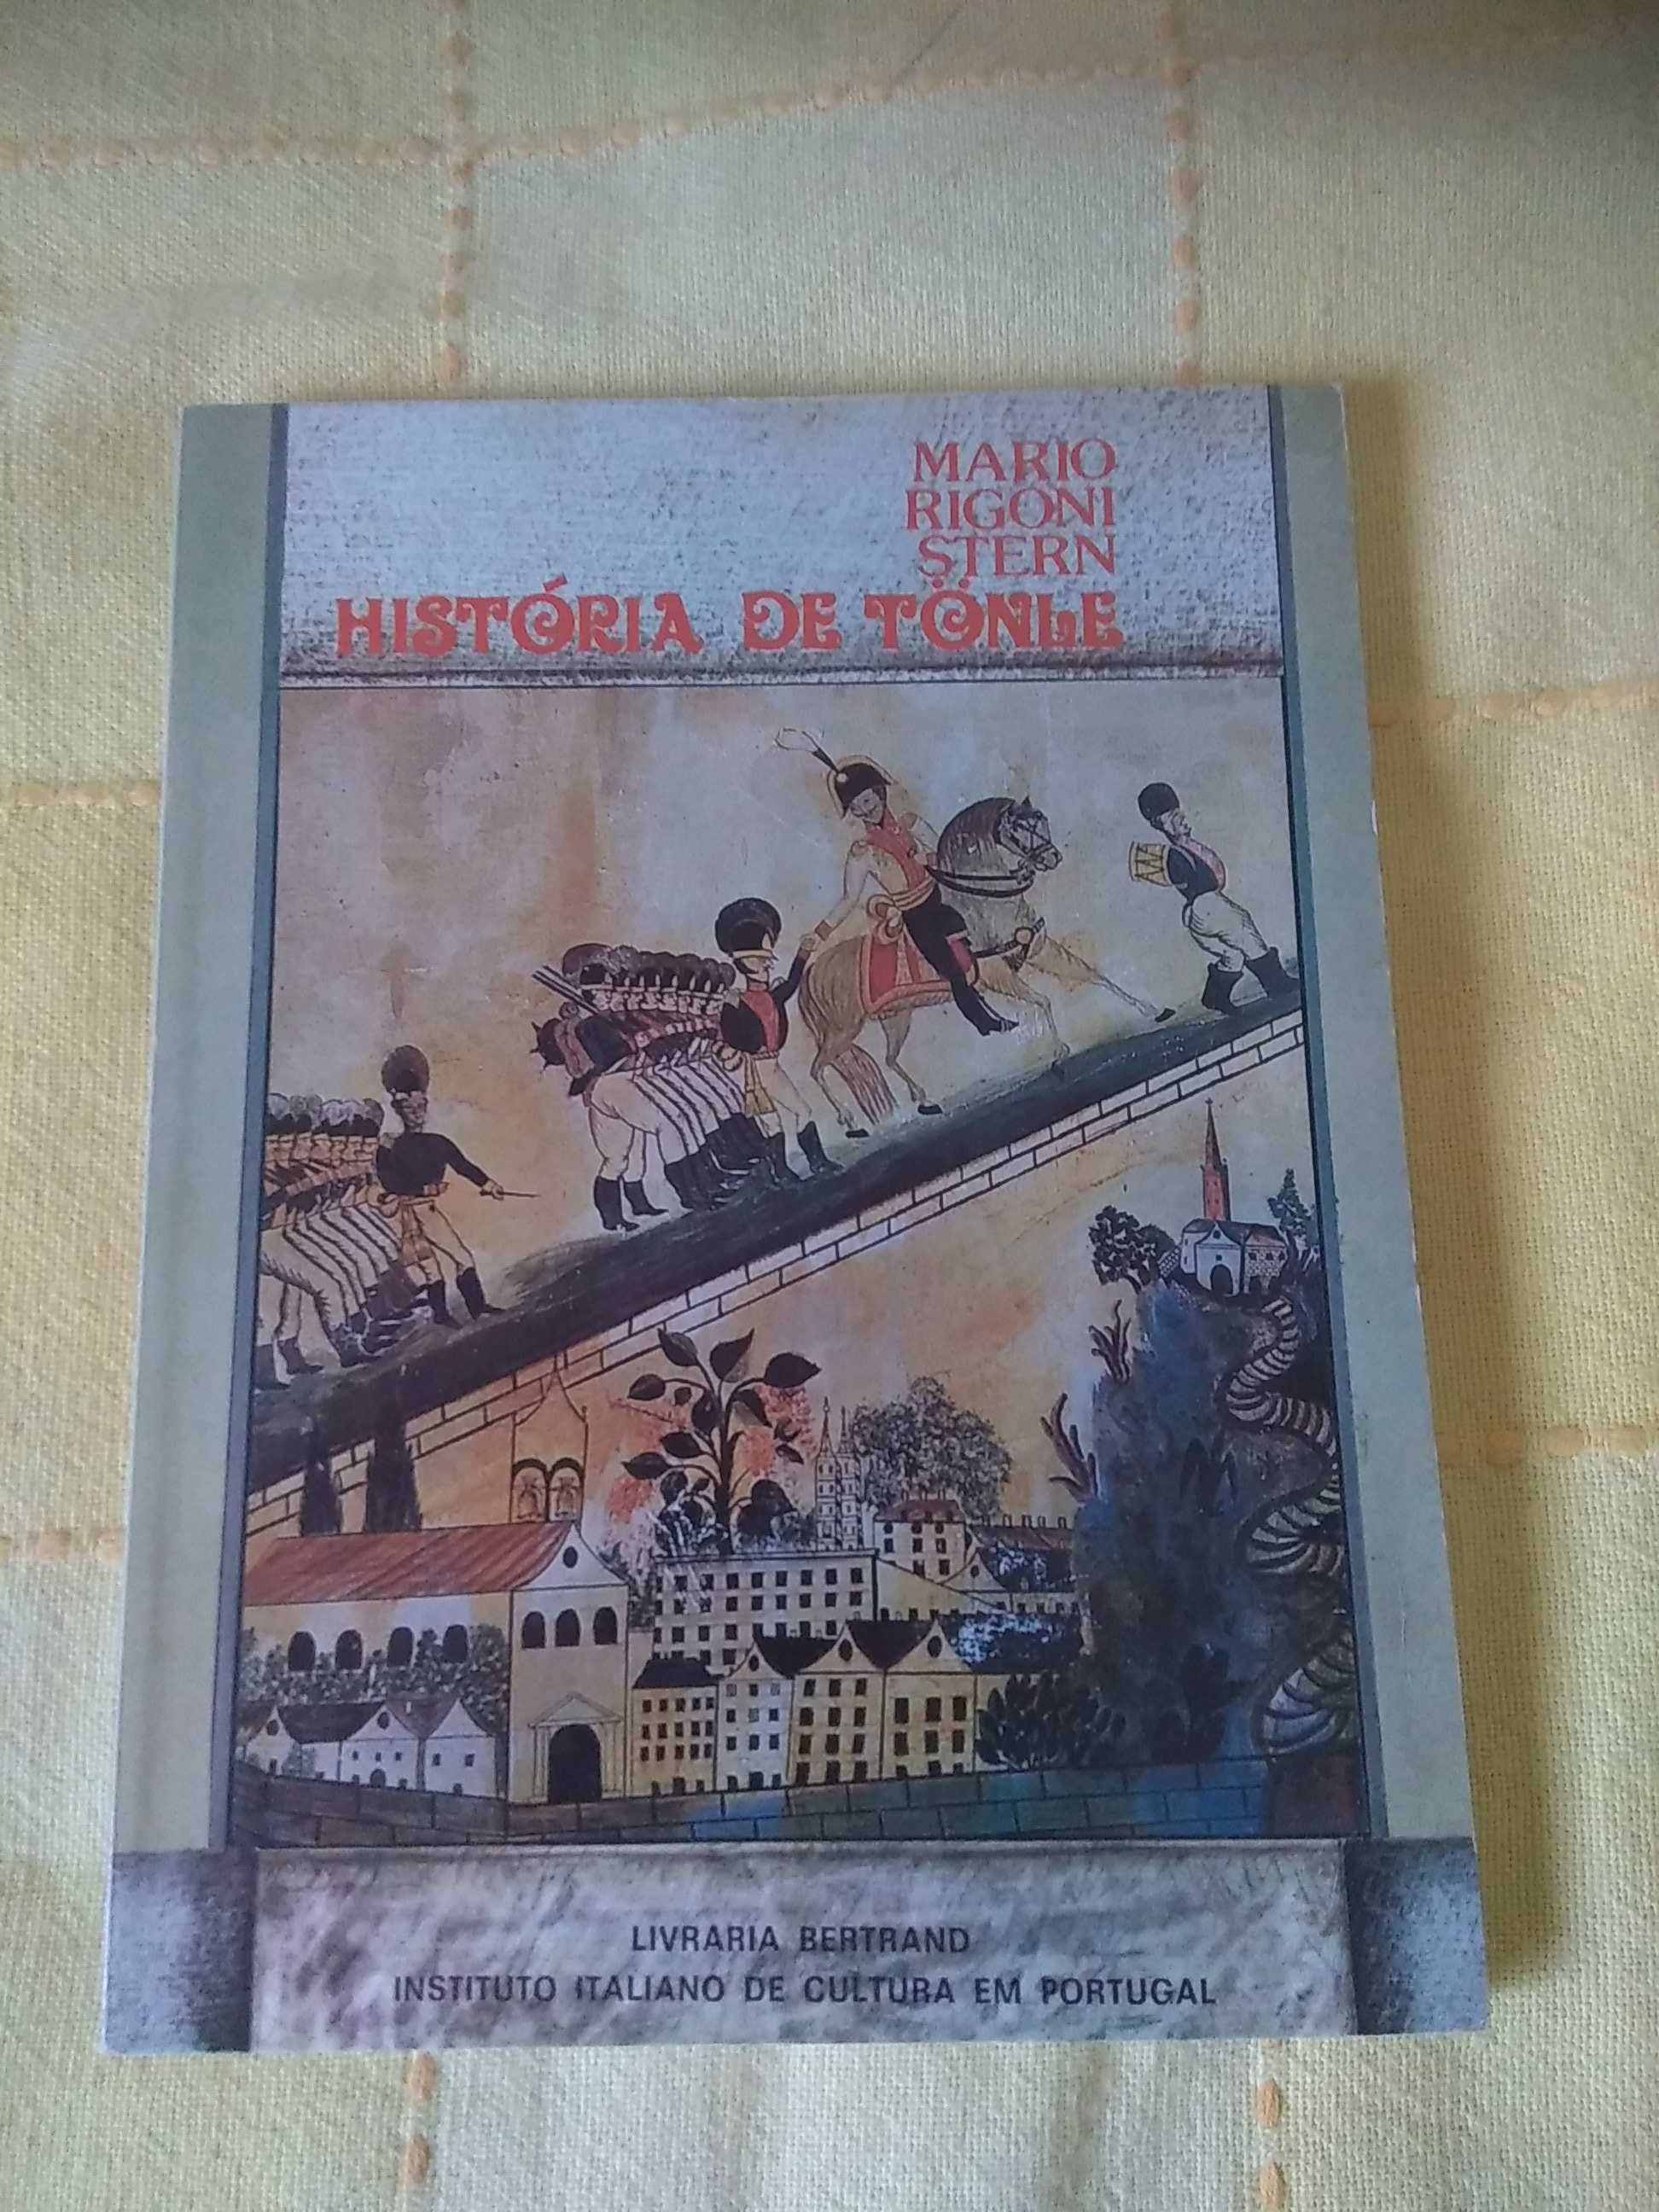 Mario Rigone Stern - História de Tonle